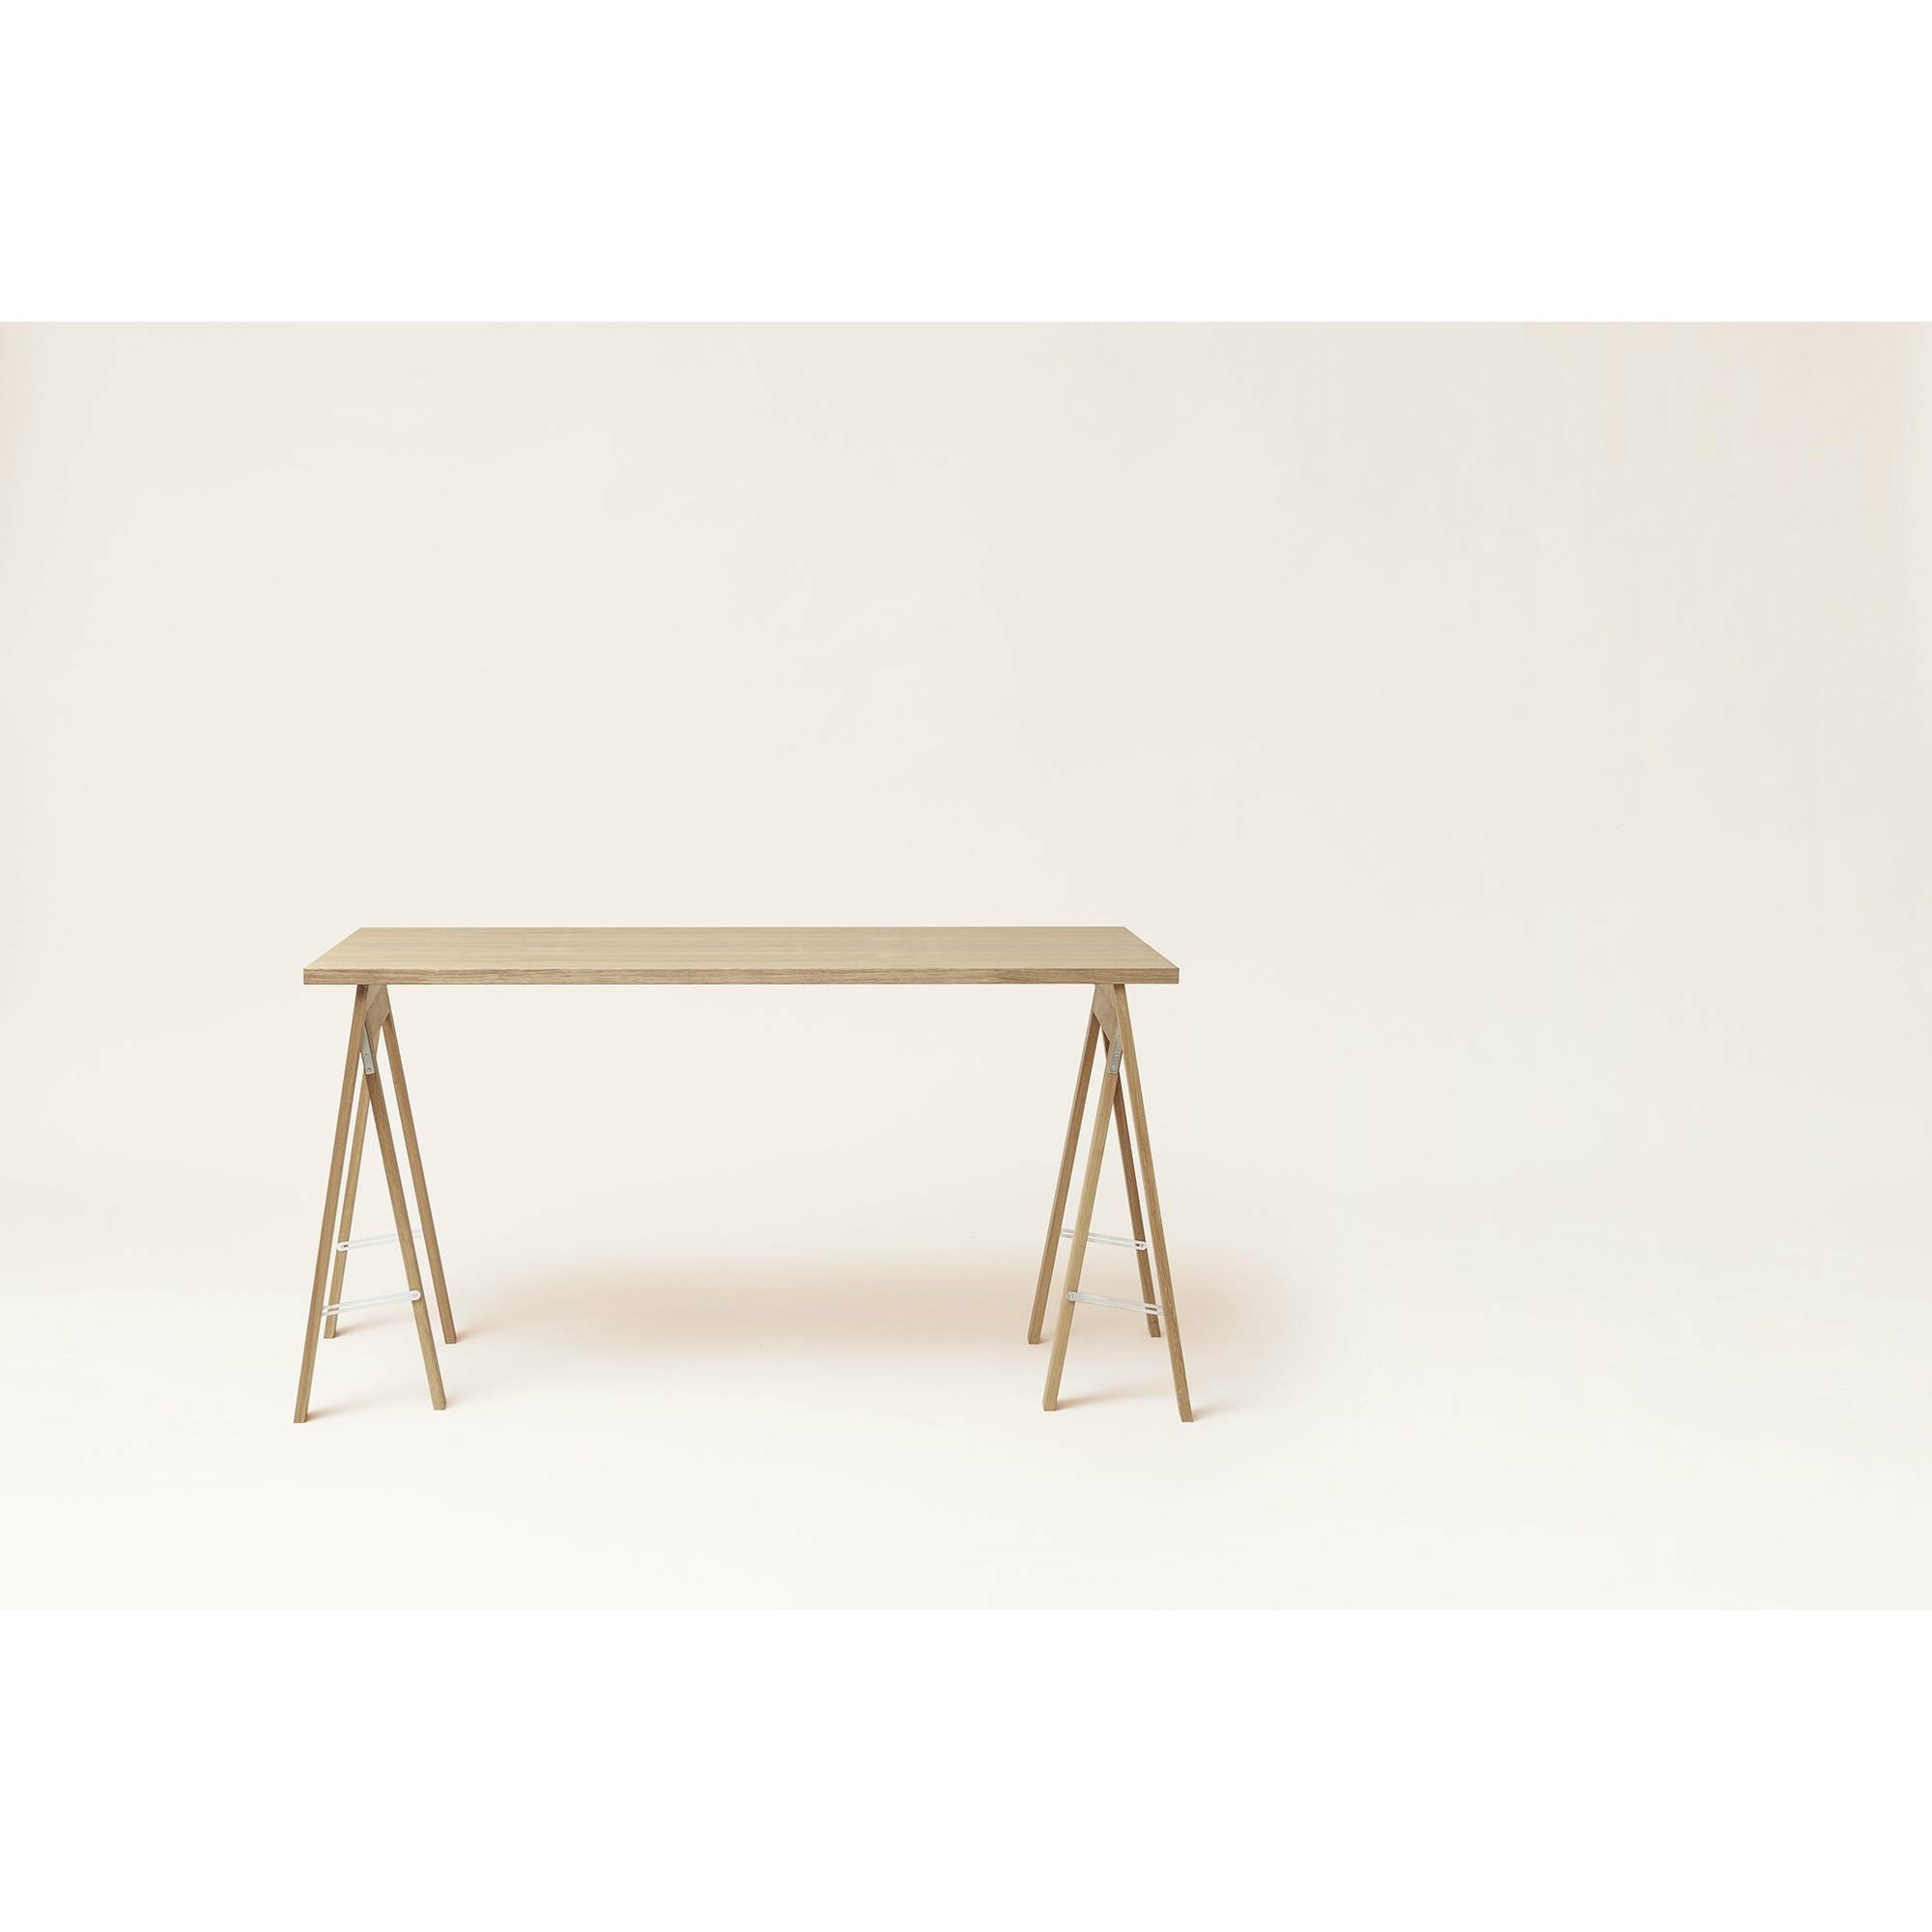 Form & Refine Linear Tischplatte 125x68 Cm. Eiche weiß geölt